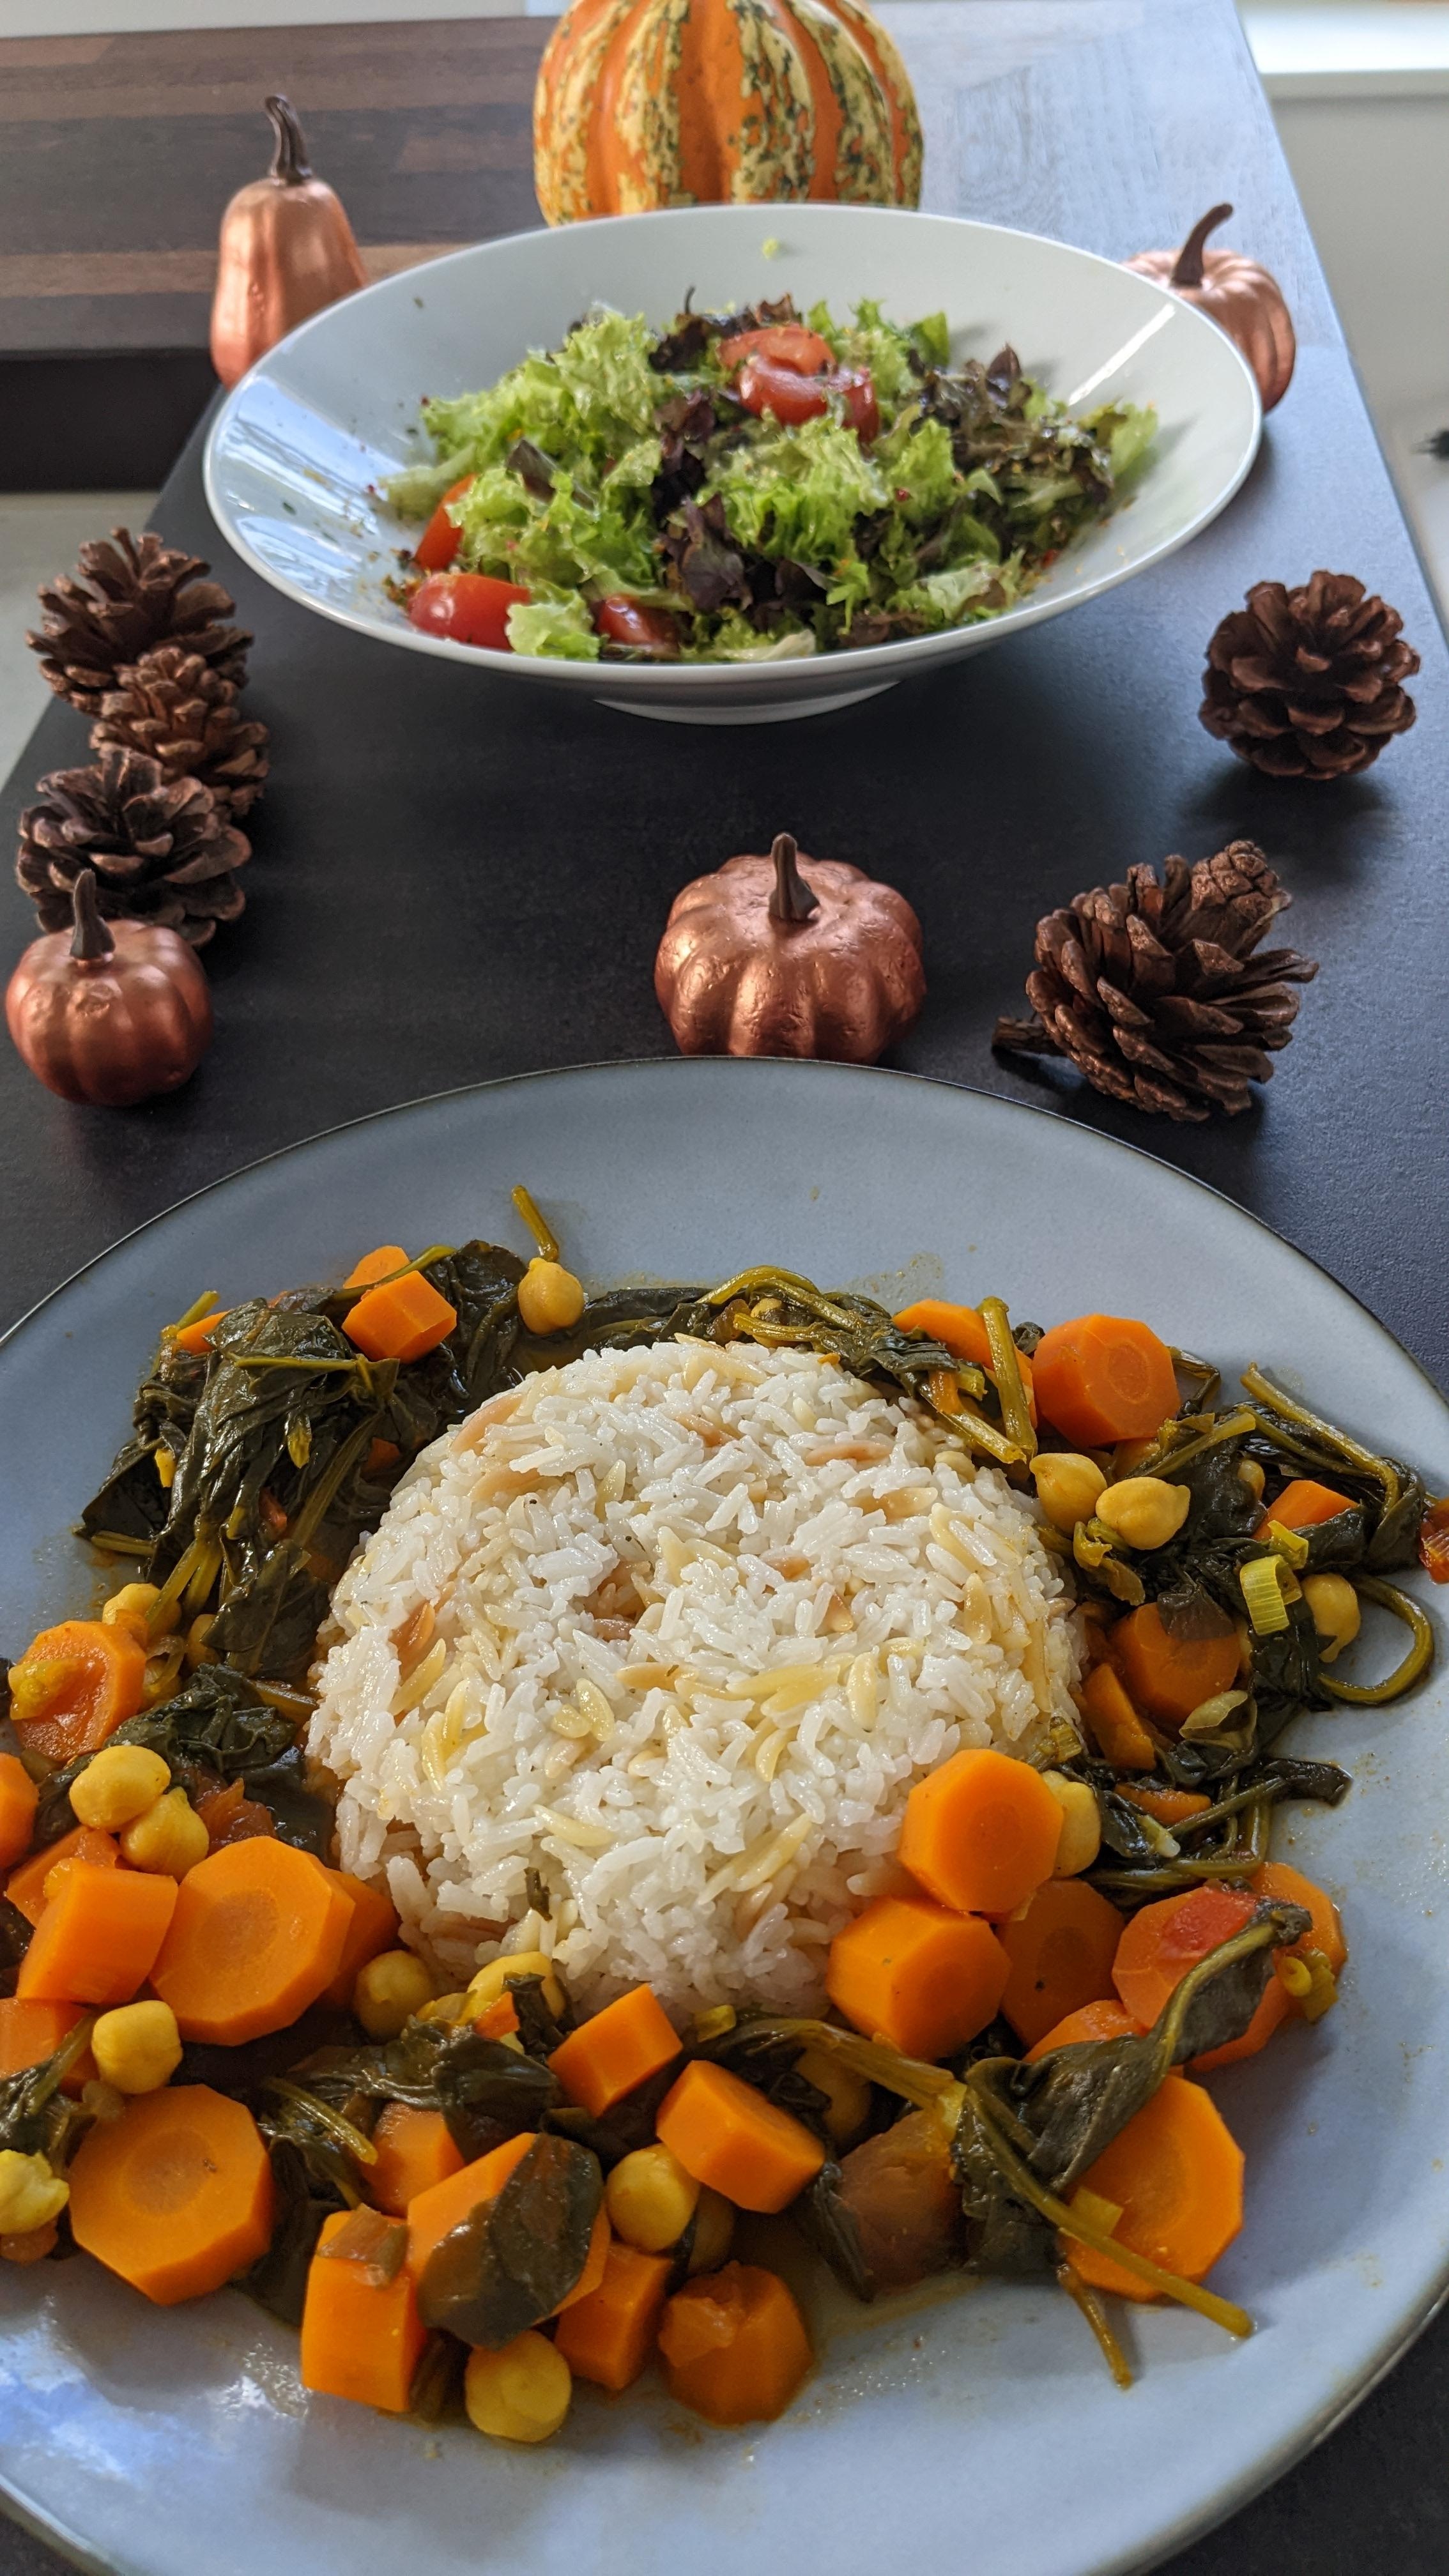 Jasmin Reis mit Kritharaki-Nudeln und Curry aus Möhren🥕, Spinat und Kichererbsen.
#vegan #food #kochen #rezept #herbst 